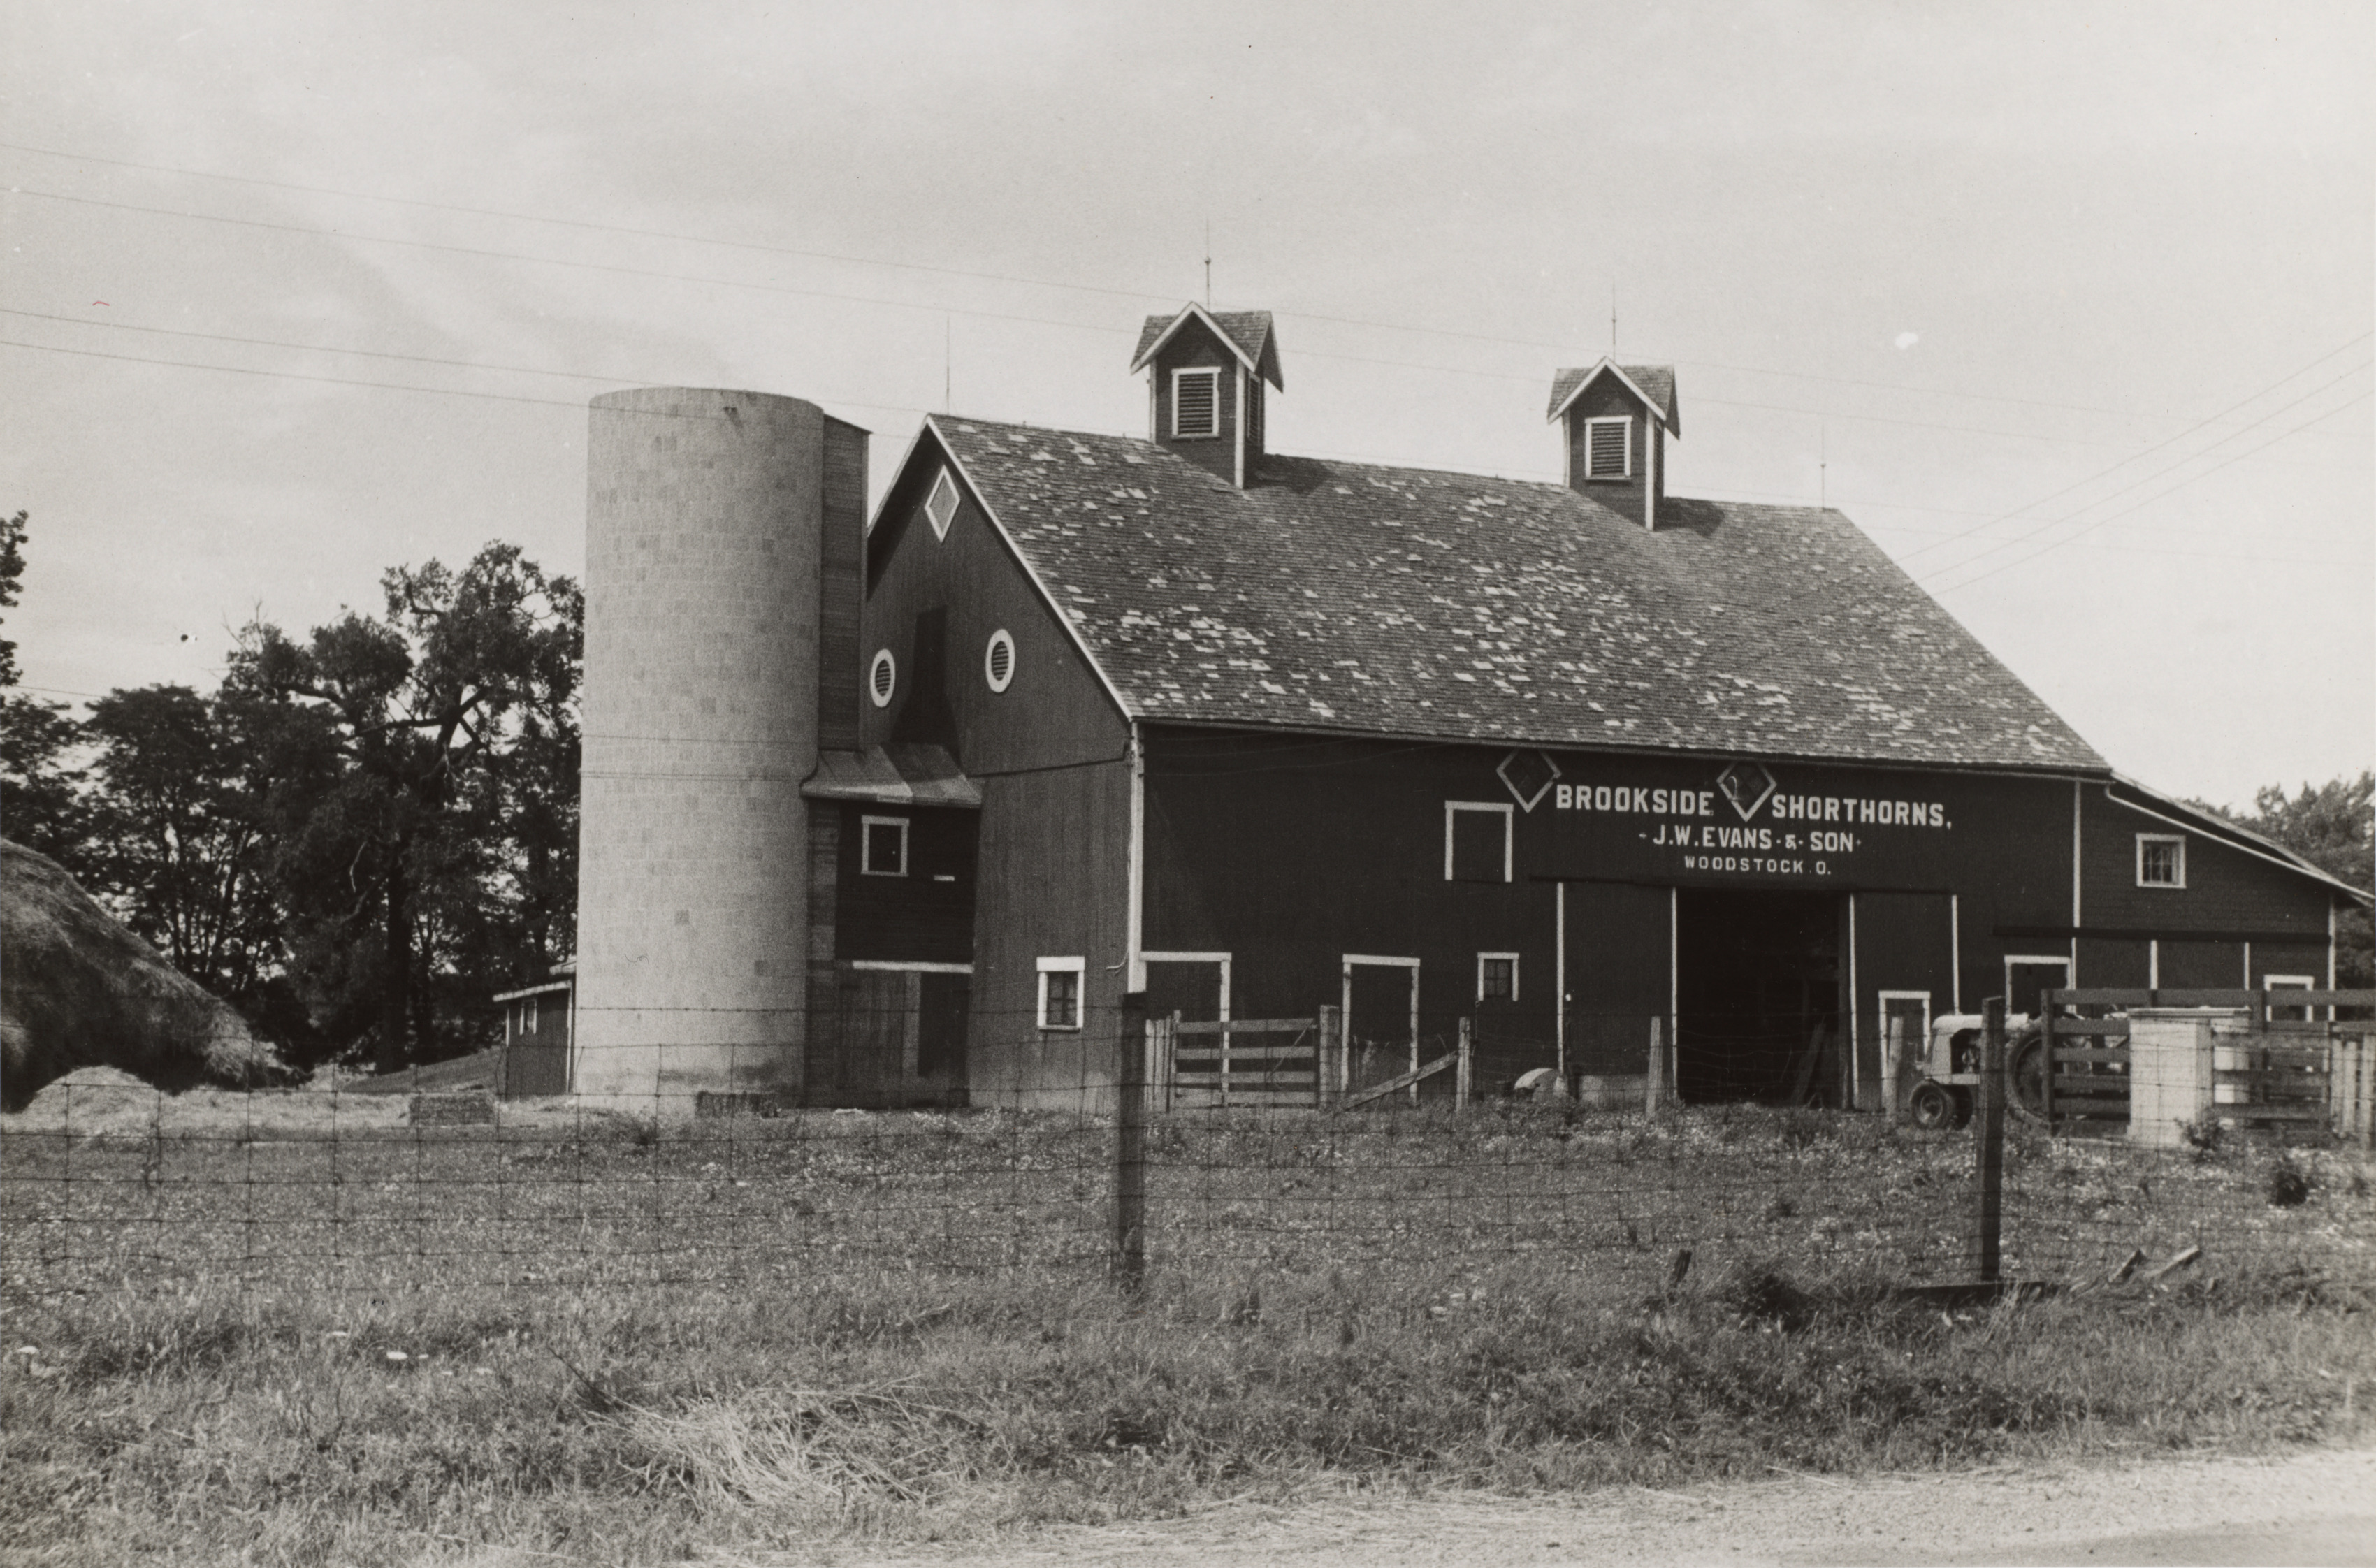 Barn and silo in Central Ohio, Woodstock, Ohio